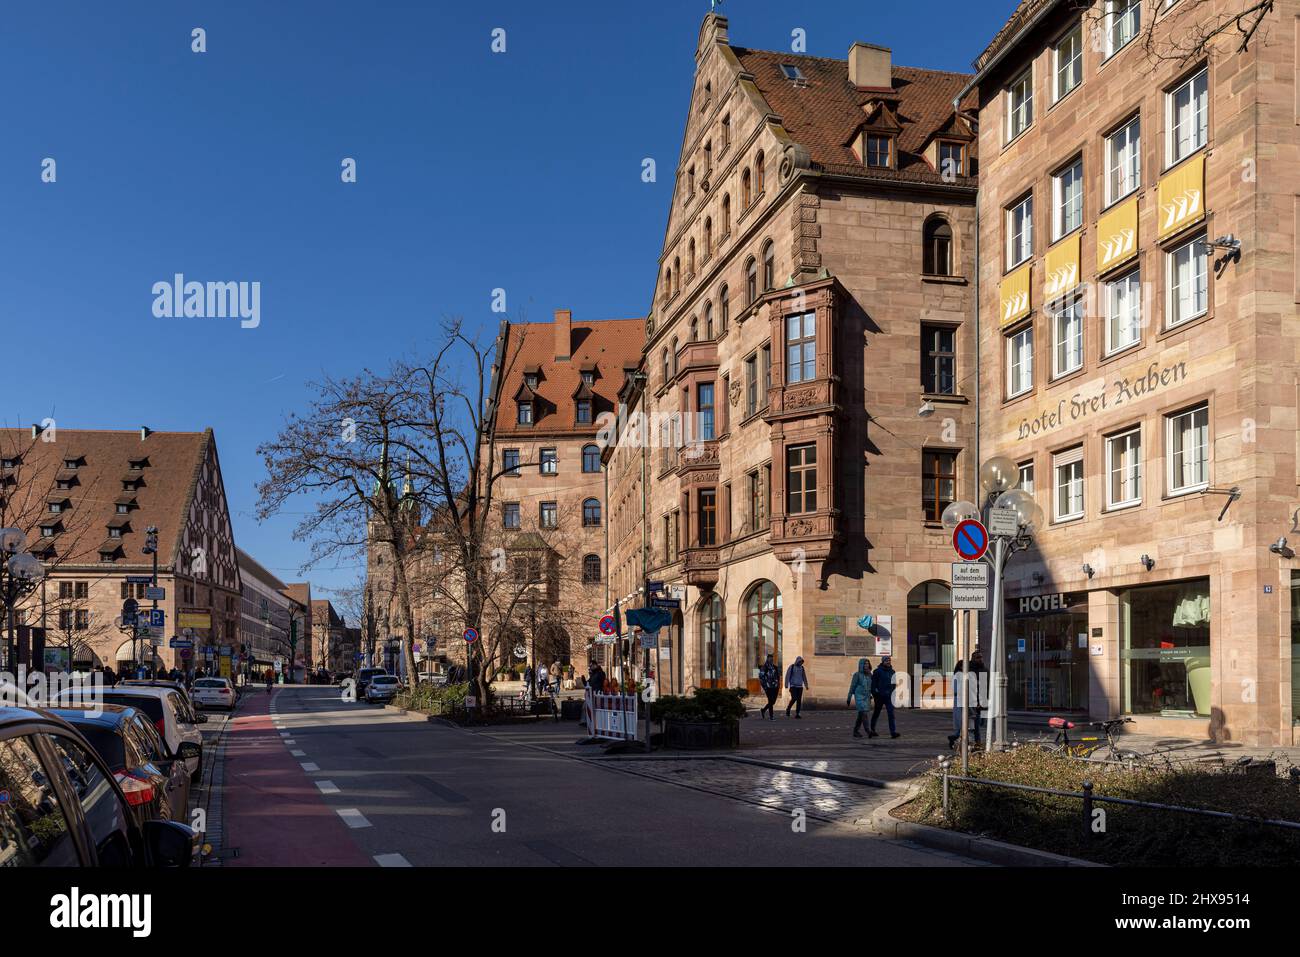 People walking on narrow alleys between historical buildings in Nuremberg old town Stock Photo